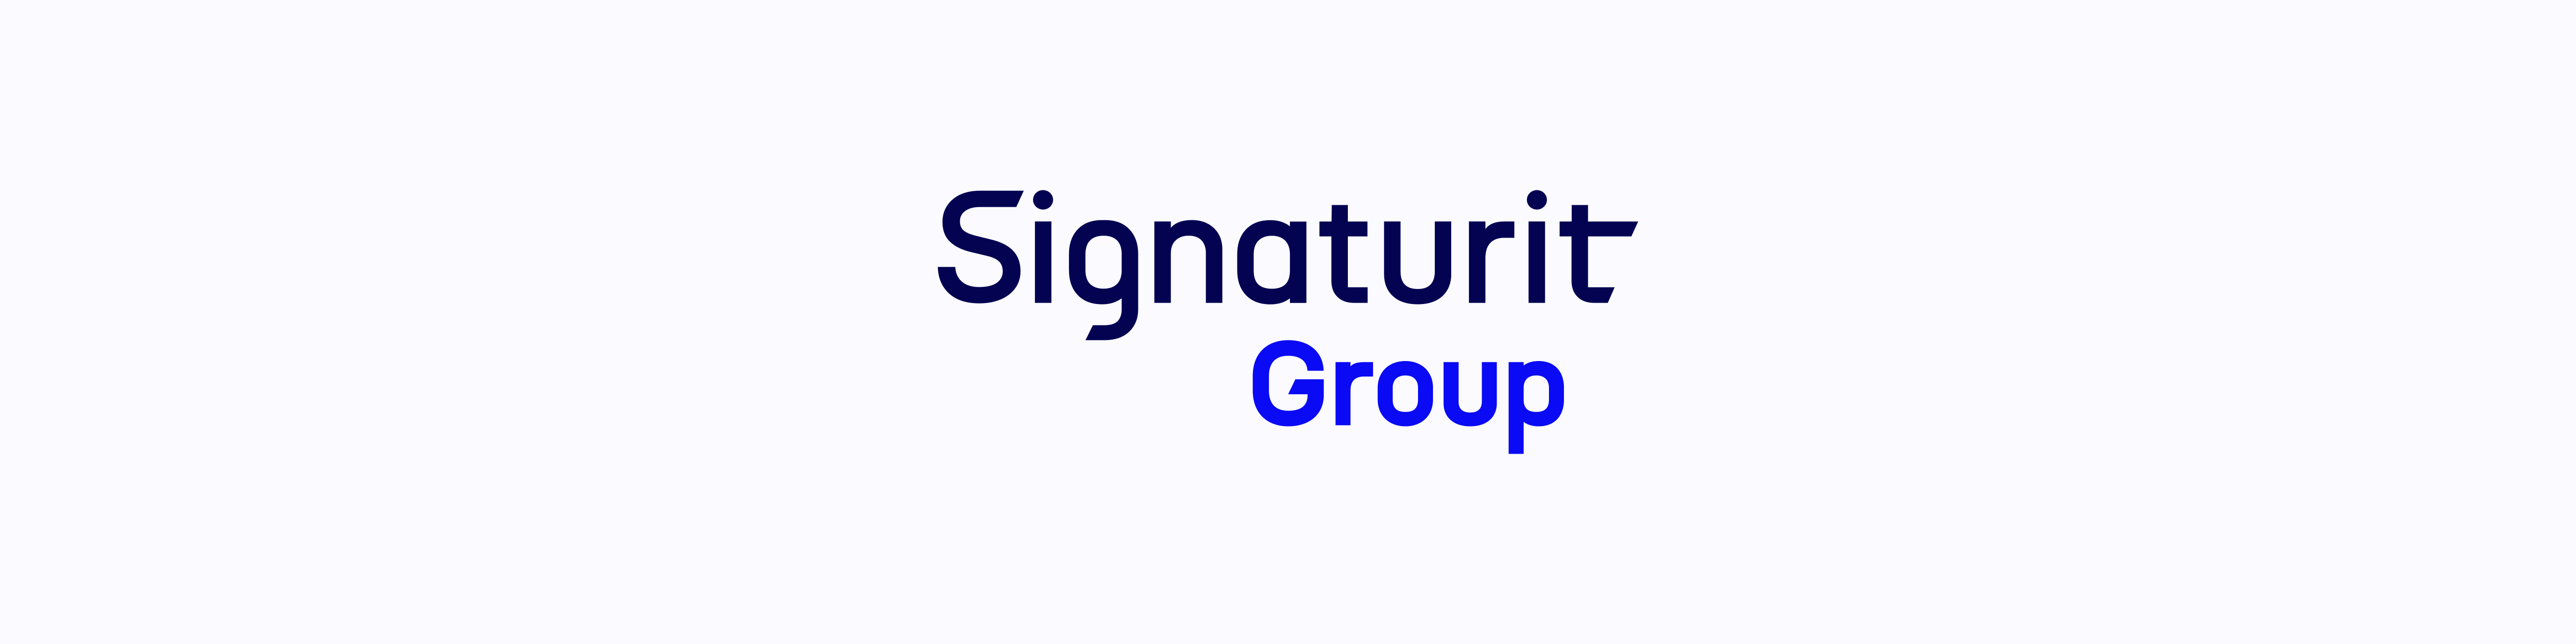 Signaturit Group estrena nueva identidad corporativa para fortalecer la unión de sus marcas  